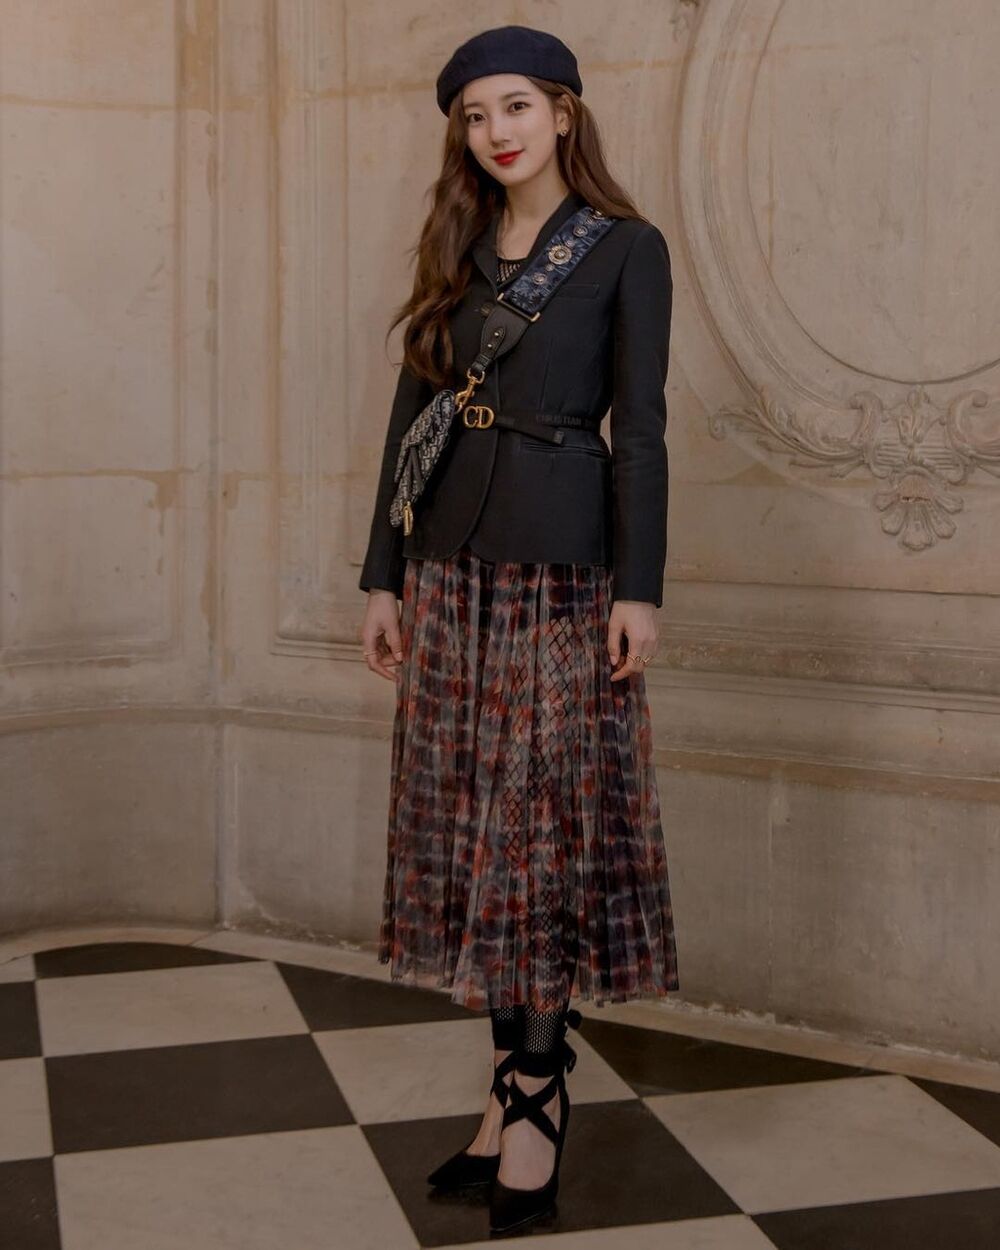 Suzy khoe diện mạo xinh đẹp khi diện quà tặng từ Dior - Mùa đông đến rồi-5